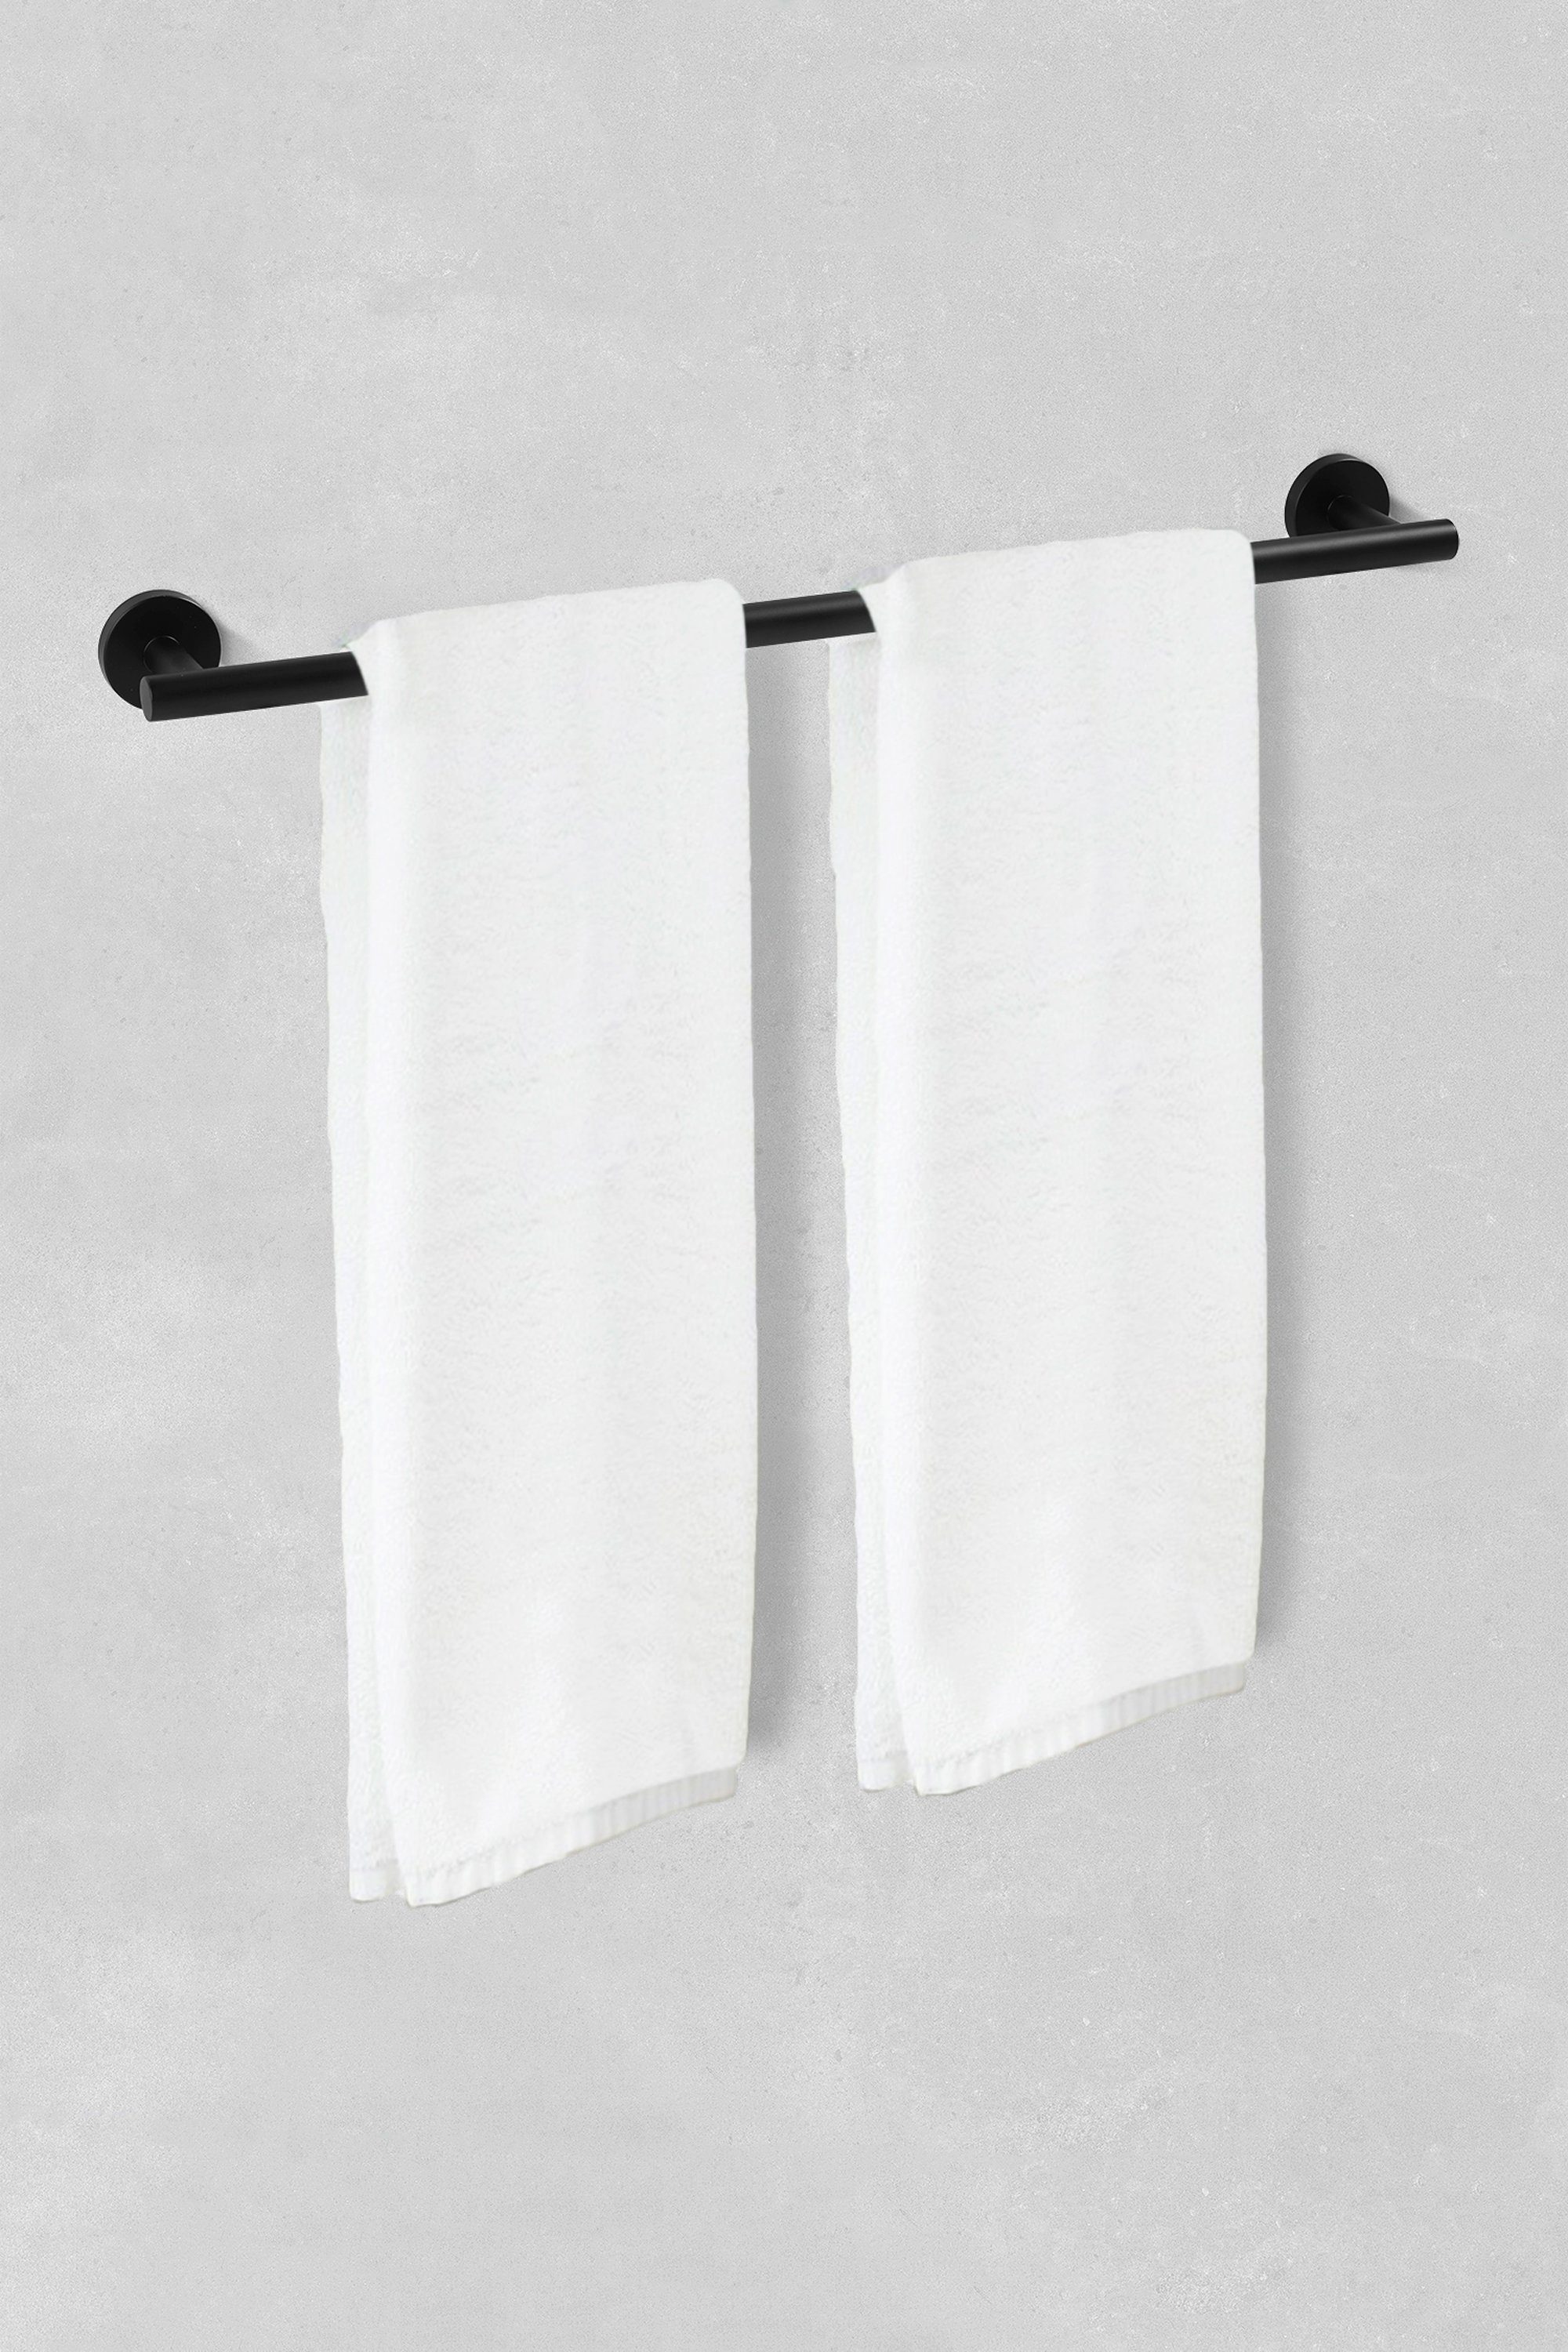 Schwarz Handtuchstange Halterung Ambrosya Handtuch Halter Bad WC Badetuchhalter aus Edelstahl Handtuchhaken Handtuchhalter Wandmontage,